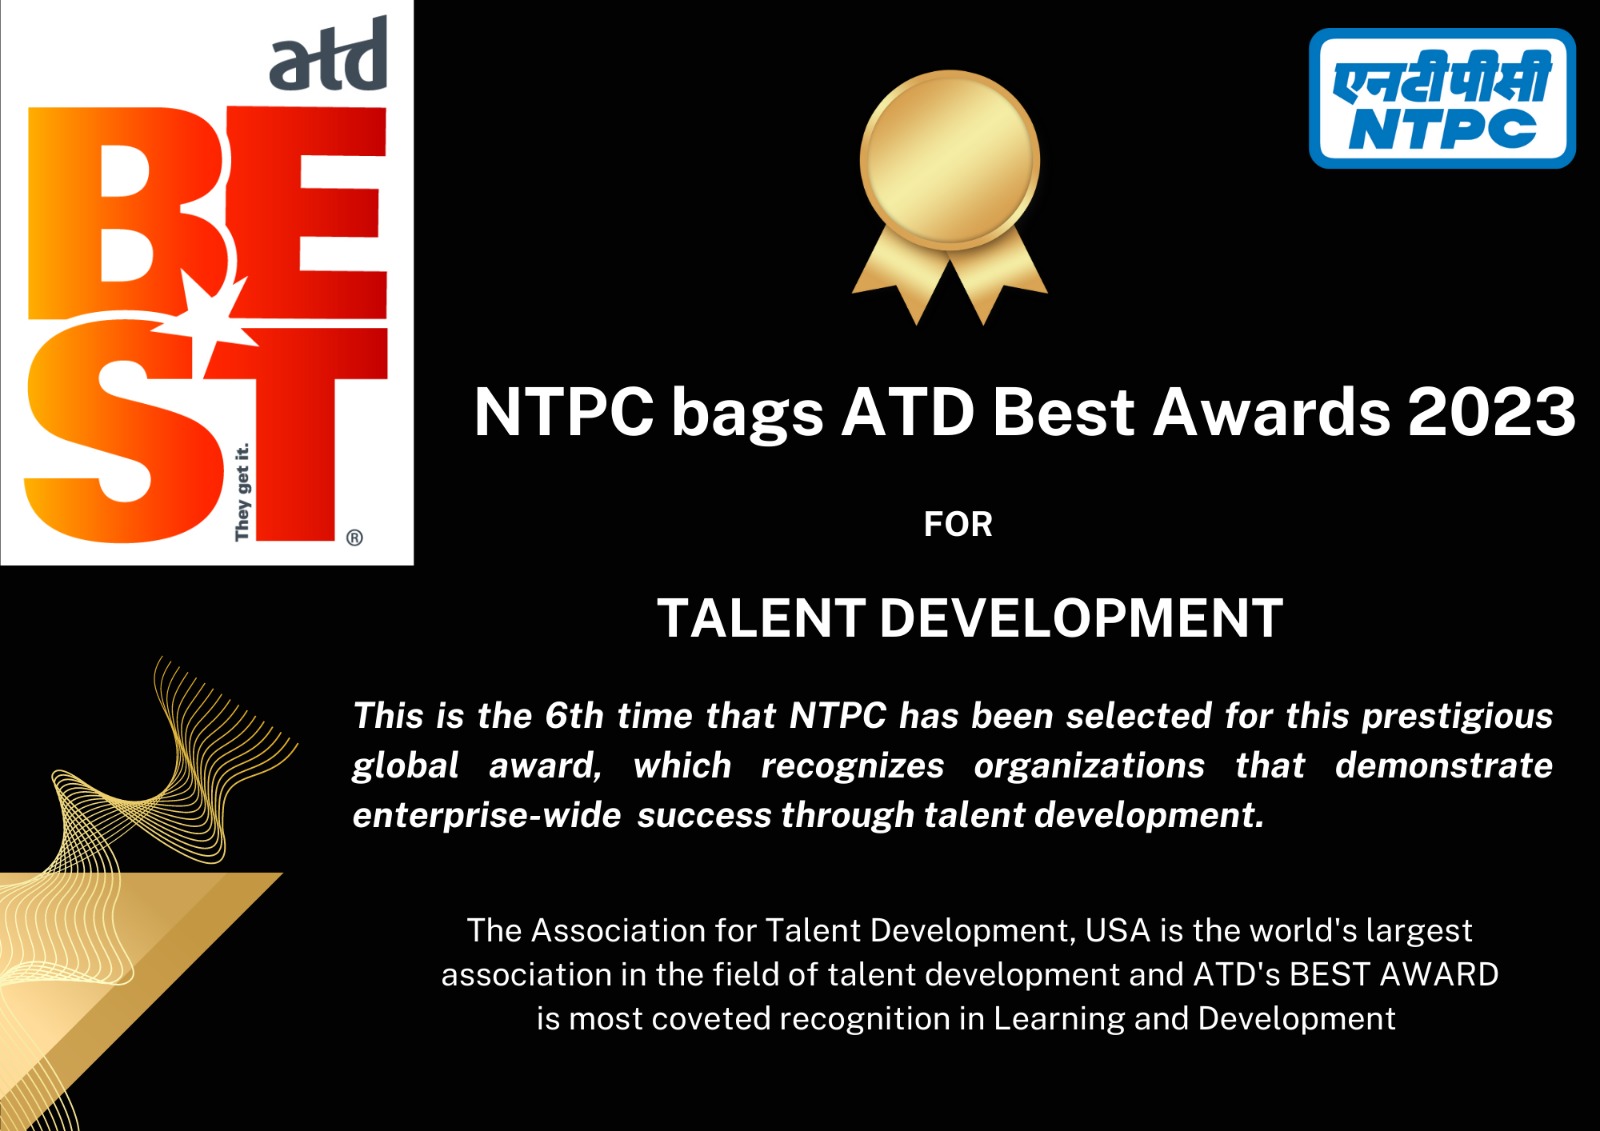 NTPC bags ‘ATD Best Awards 2023’ 